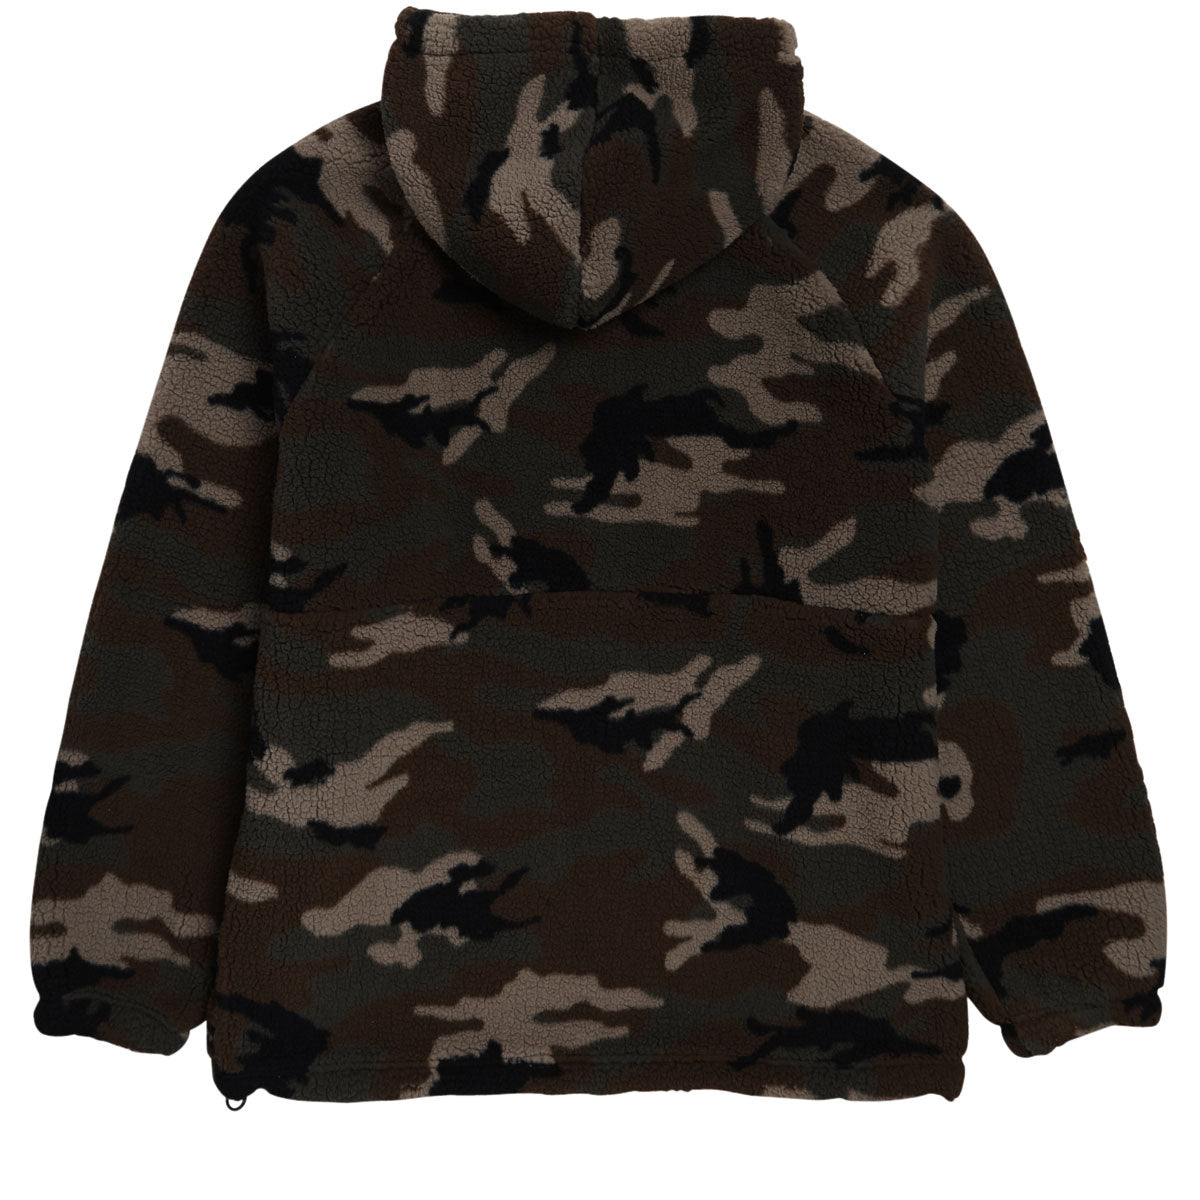 Volcom Arstone Zip Fleece Sweatshirt - Camouflage image 2